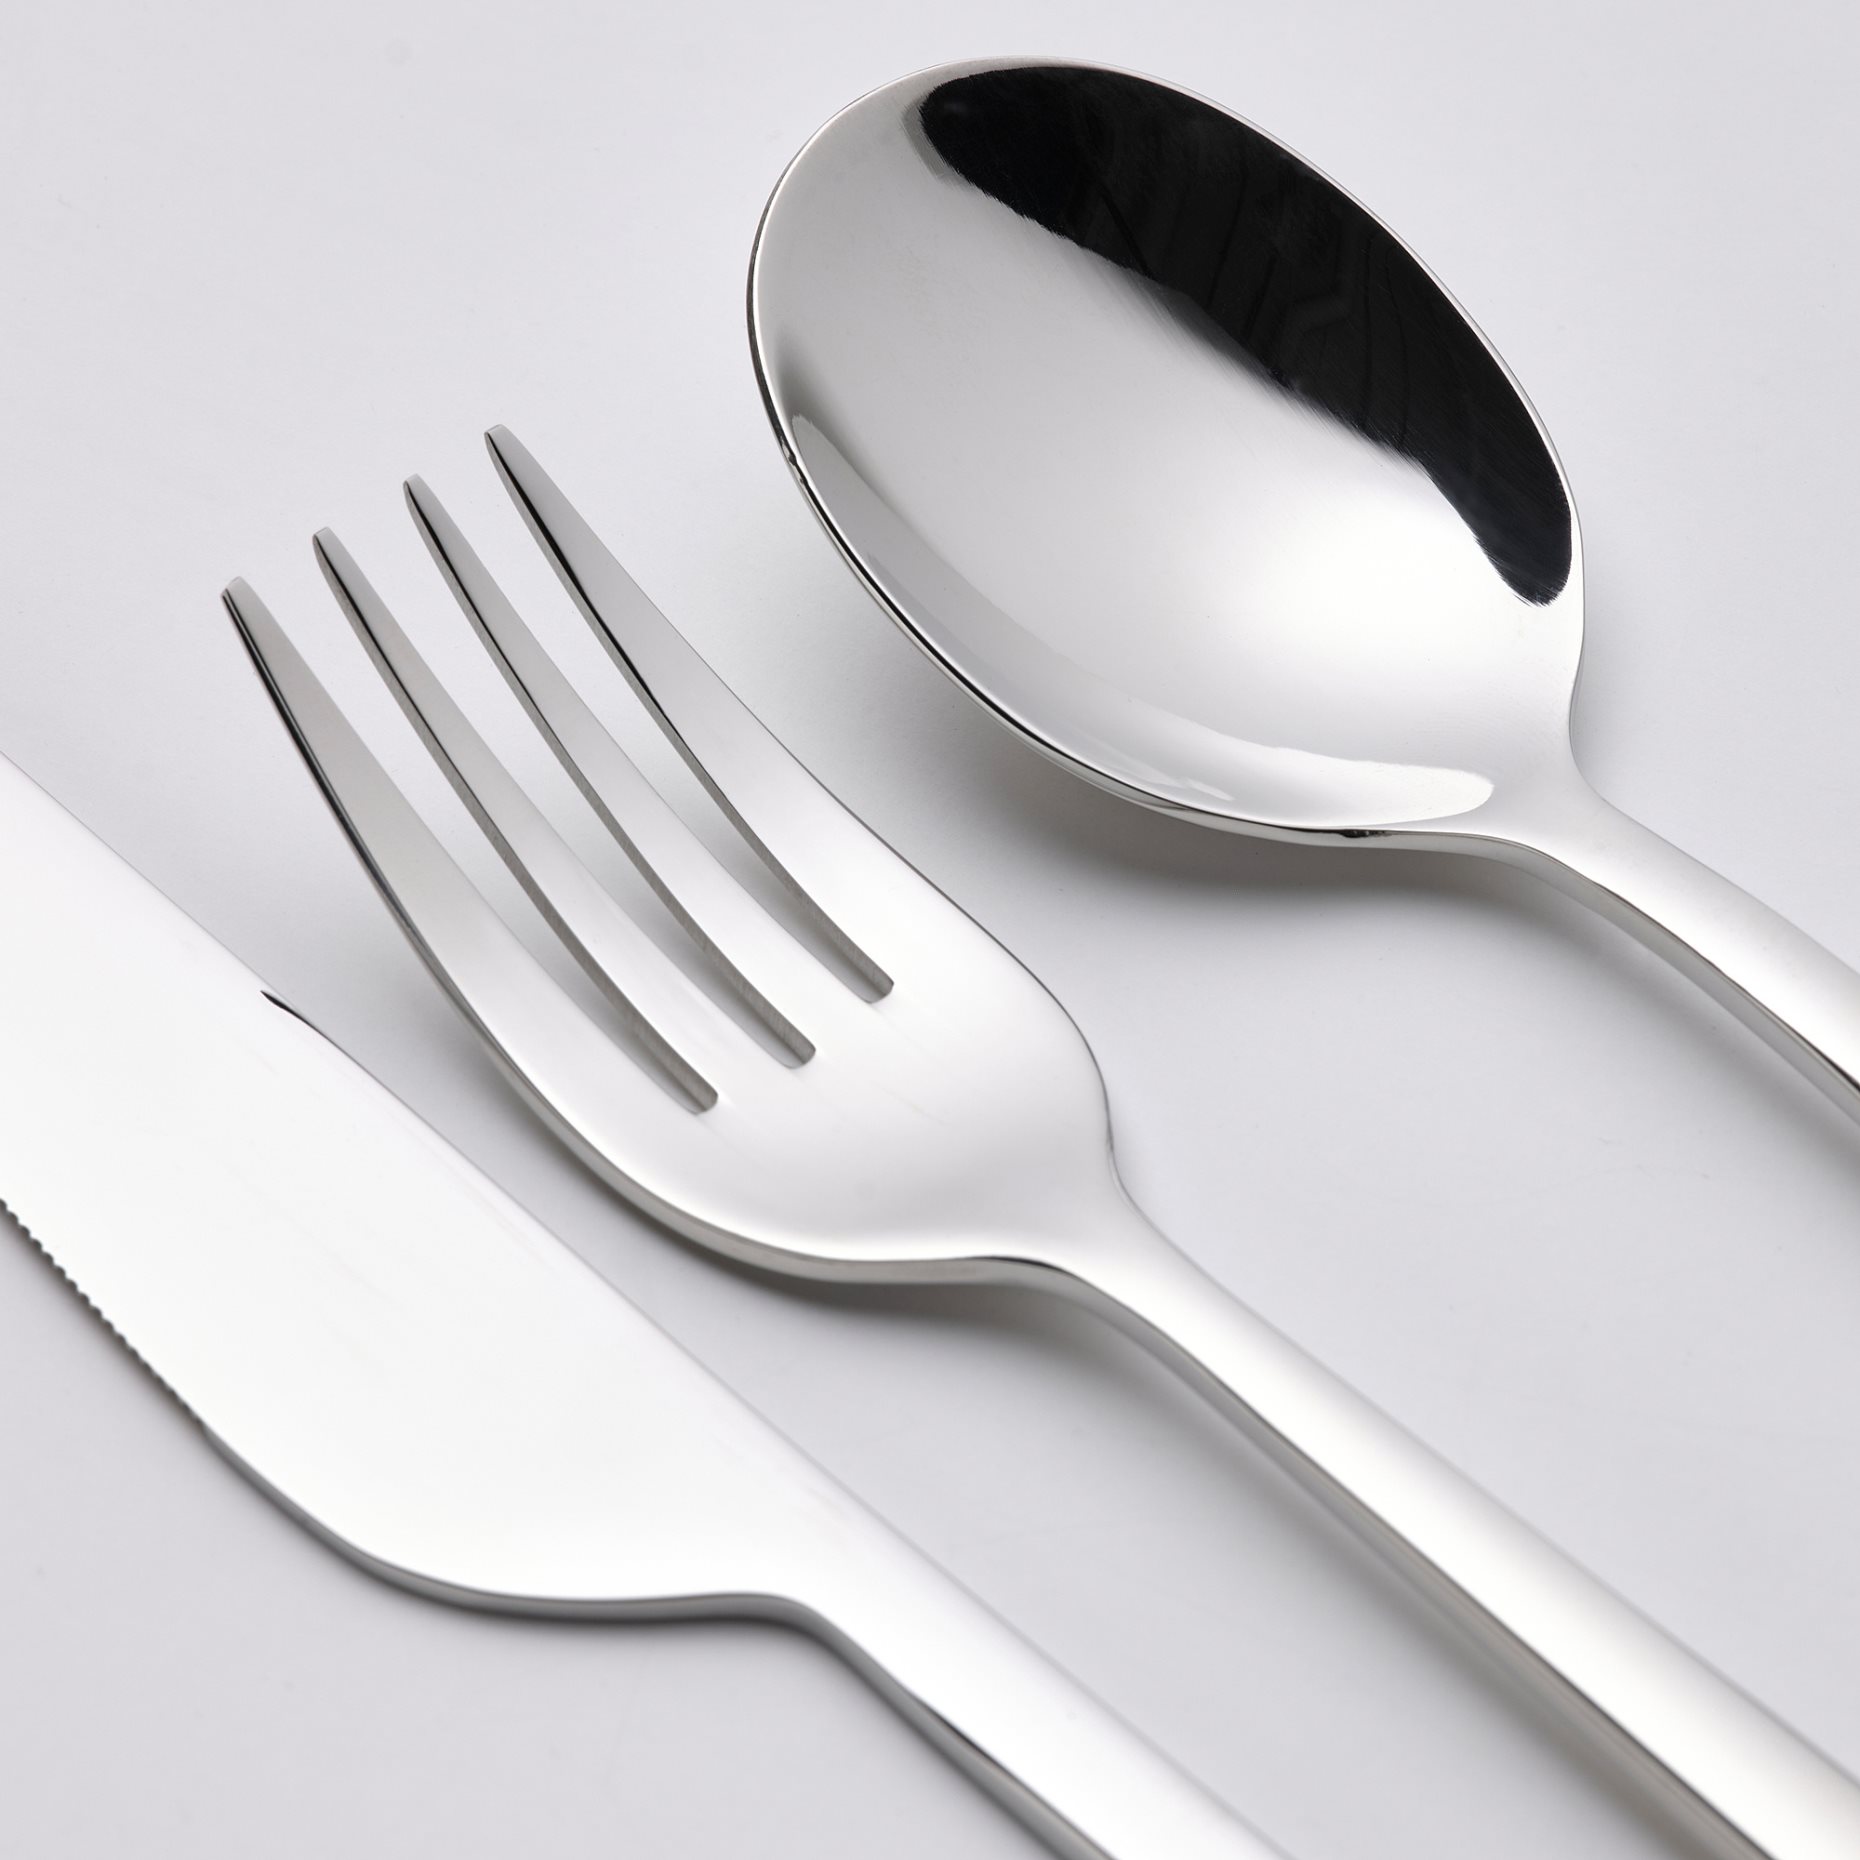 LÖFTESRIK, 24-piece cutlery set, 404.509.58